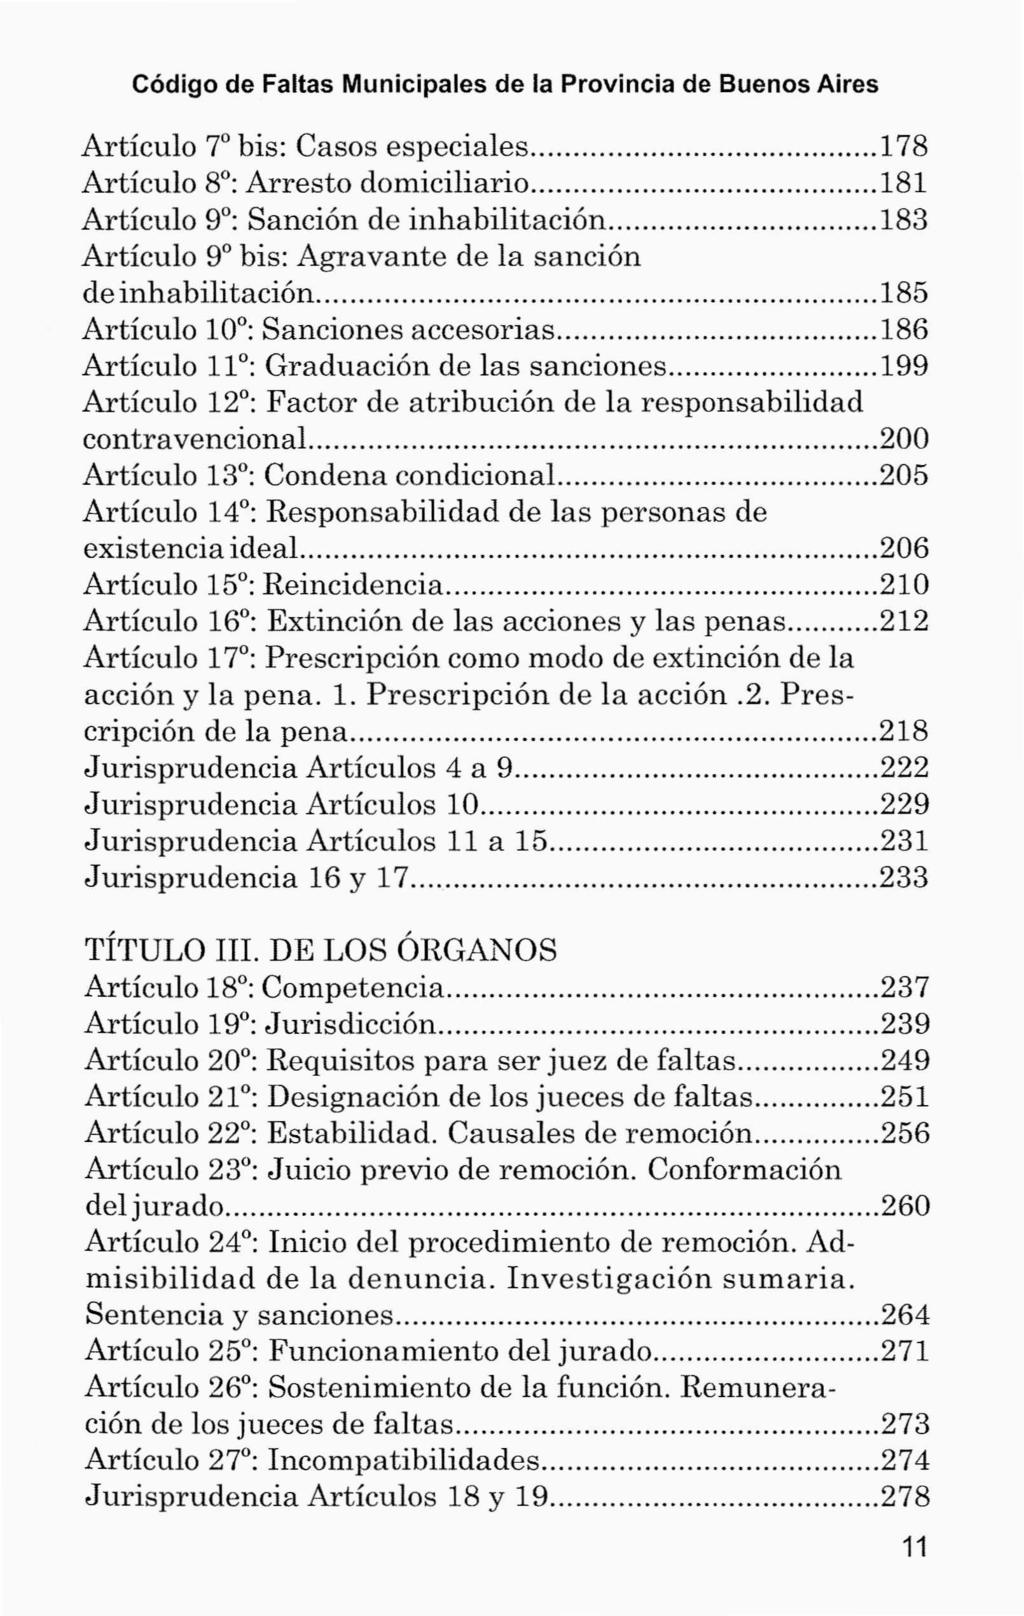 Código de Faltas Municipales de la Provincia de Buenos Aires Artículo 7 bis: Casos especiales 178 Artículo 8 : Arresto domiciliario 181 Artículo 9 : Sanción de inhabilitación 183 Artículo 9 bis: